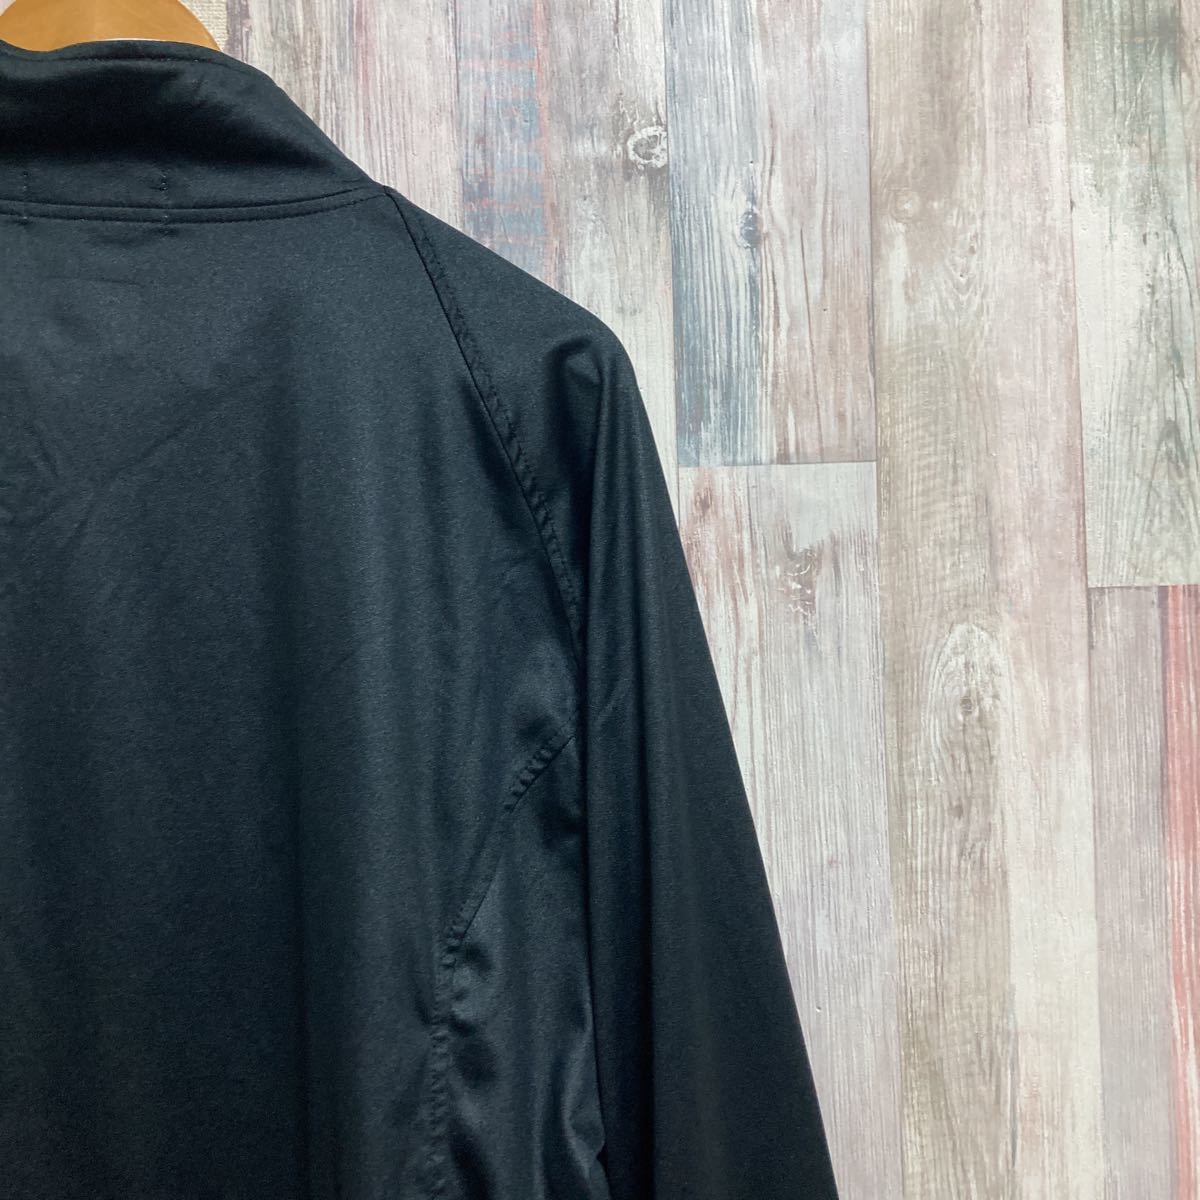  Yonex YONEX jersey jacket size:L black tennis bato Minton 220528-7②